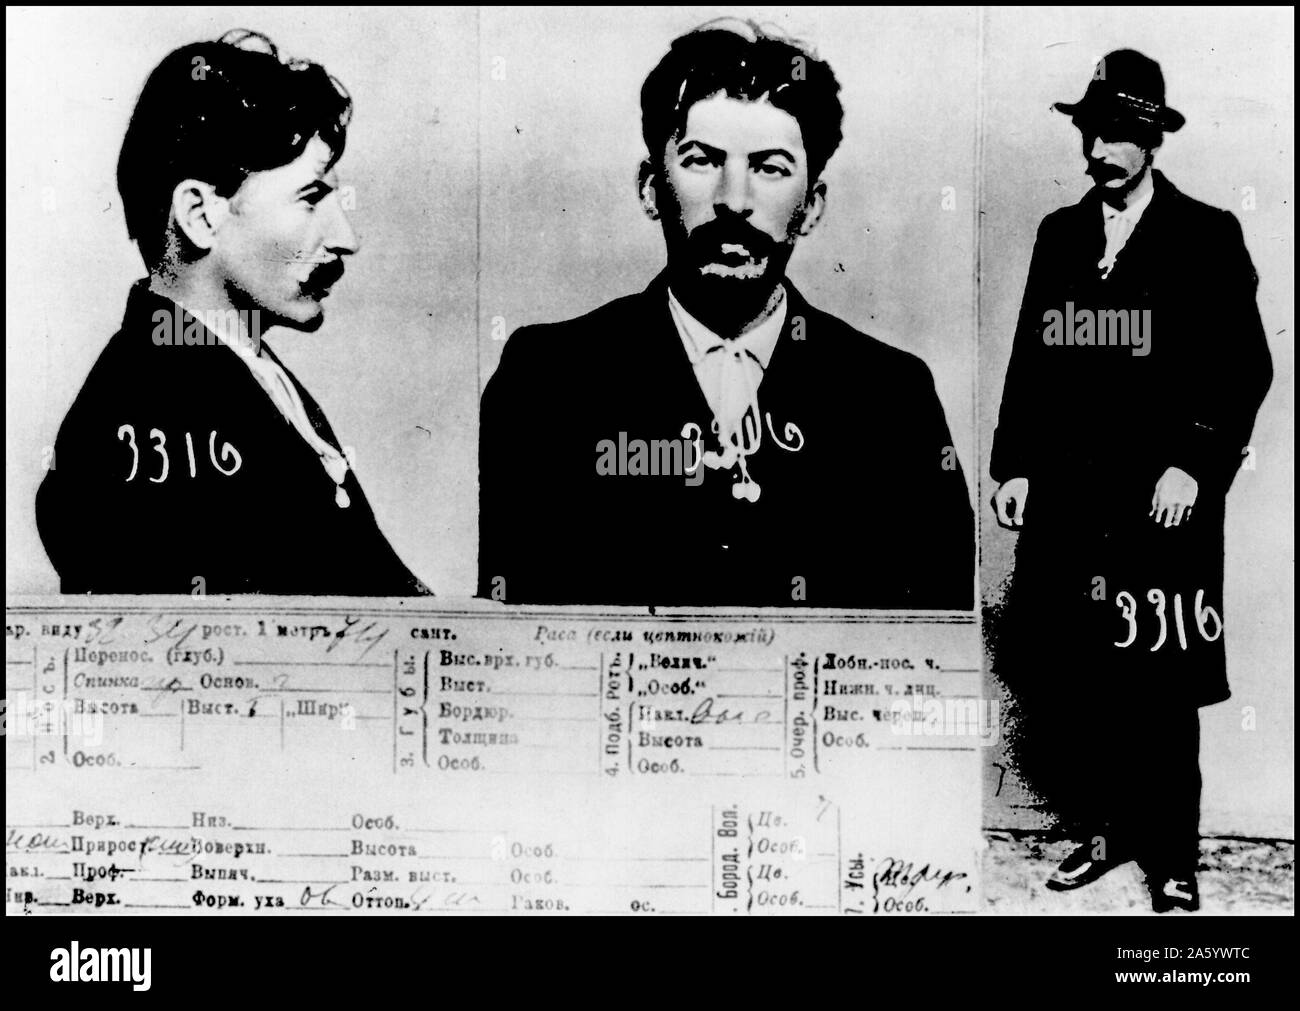 Fahndungsfoto des Jospef Stalin genommen von der zaristischen Geheimpolizei in Sankt Petersburg, wie Stalin die russische Regierung vor der Revolution von 1917 kämpfte. Datiert 1911 Stockfoto